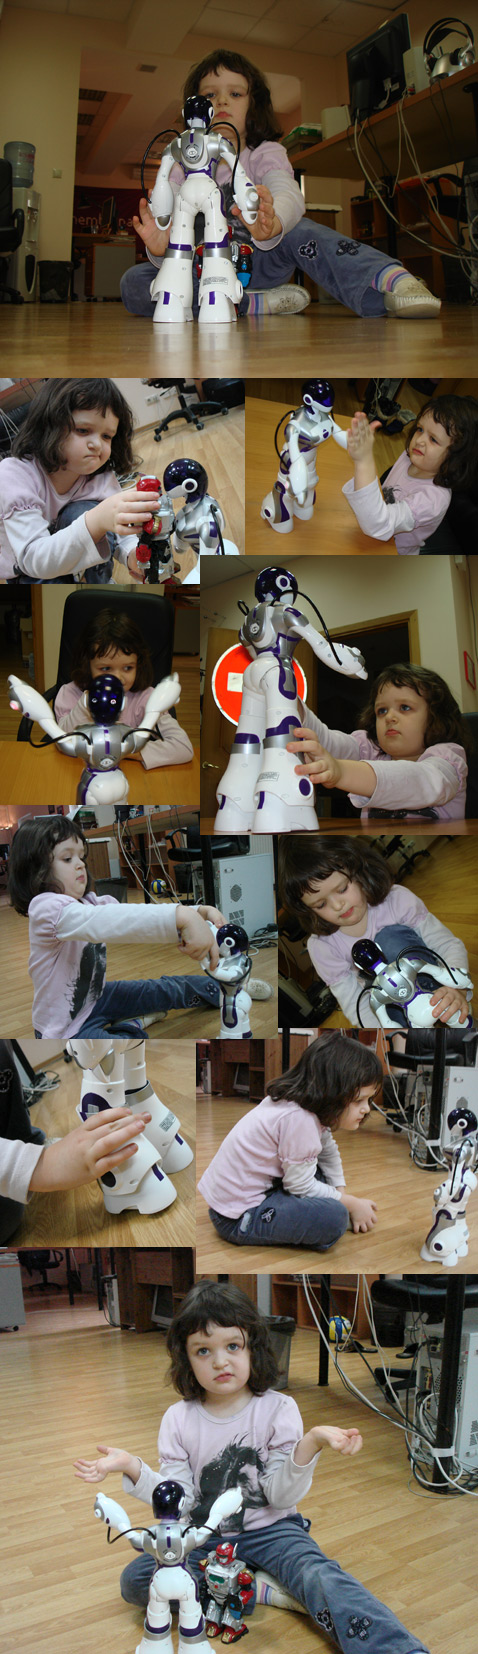 Мы провели опыты на детях – дали поиграть с "Феми" пятилетней девочке Соне. "Обучение" робота оказалось единственным режимом, сразу интуитивно понятым ребёнком. Также подтвердилась "восьмилетняя" возрастная планка: в 5 лет и впрямь рановато (фото MEMBRANA).